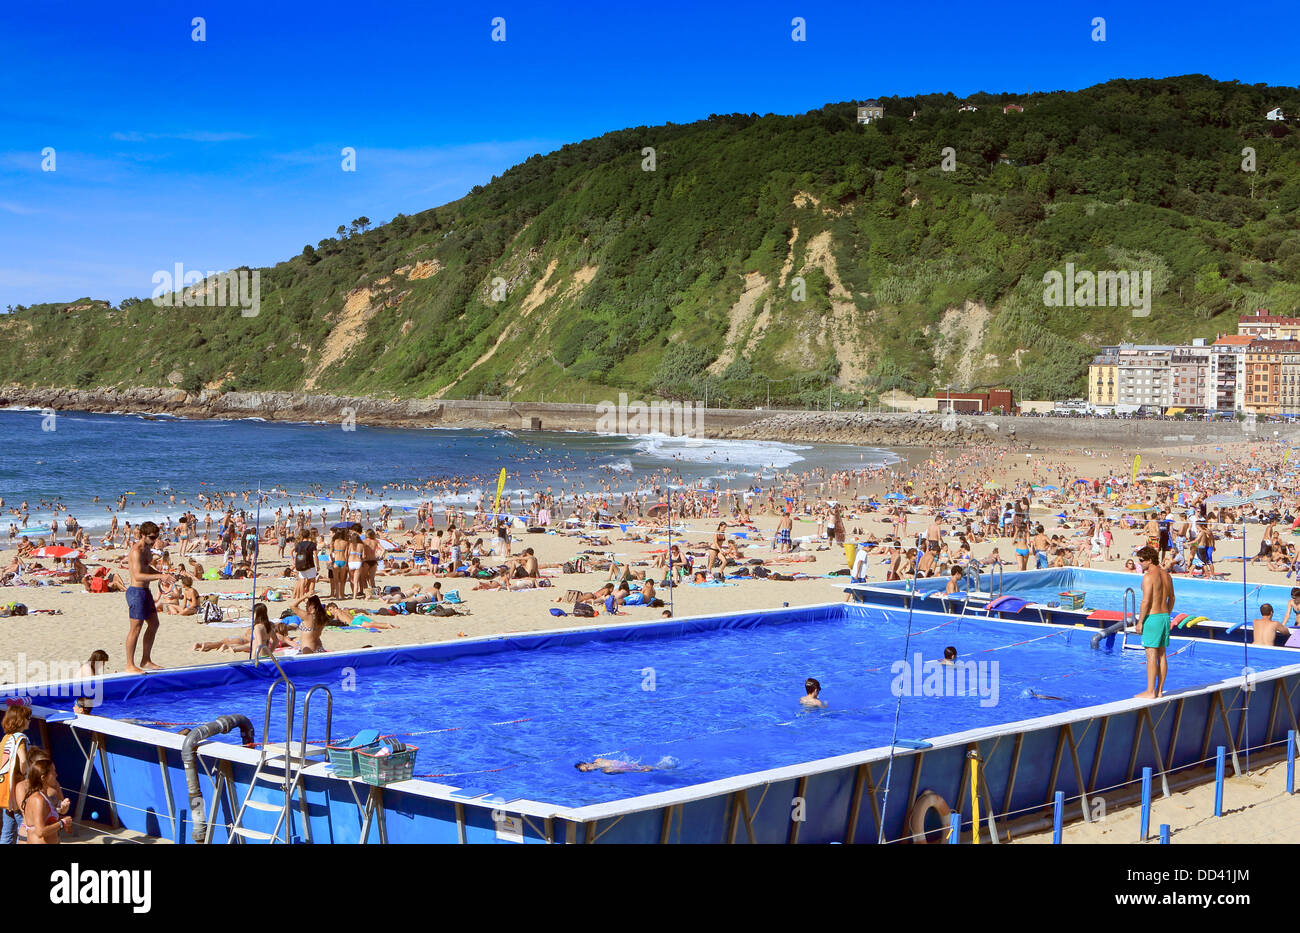 Schwimmbad im Einsatz auf einem überfüllten Gros Strand während des Sommers in San Sebastian, Spanien Stockfoto